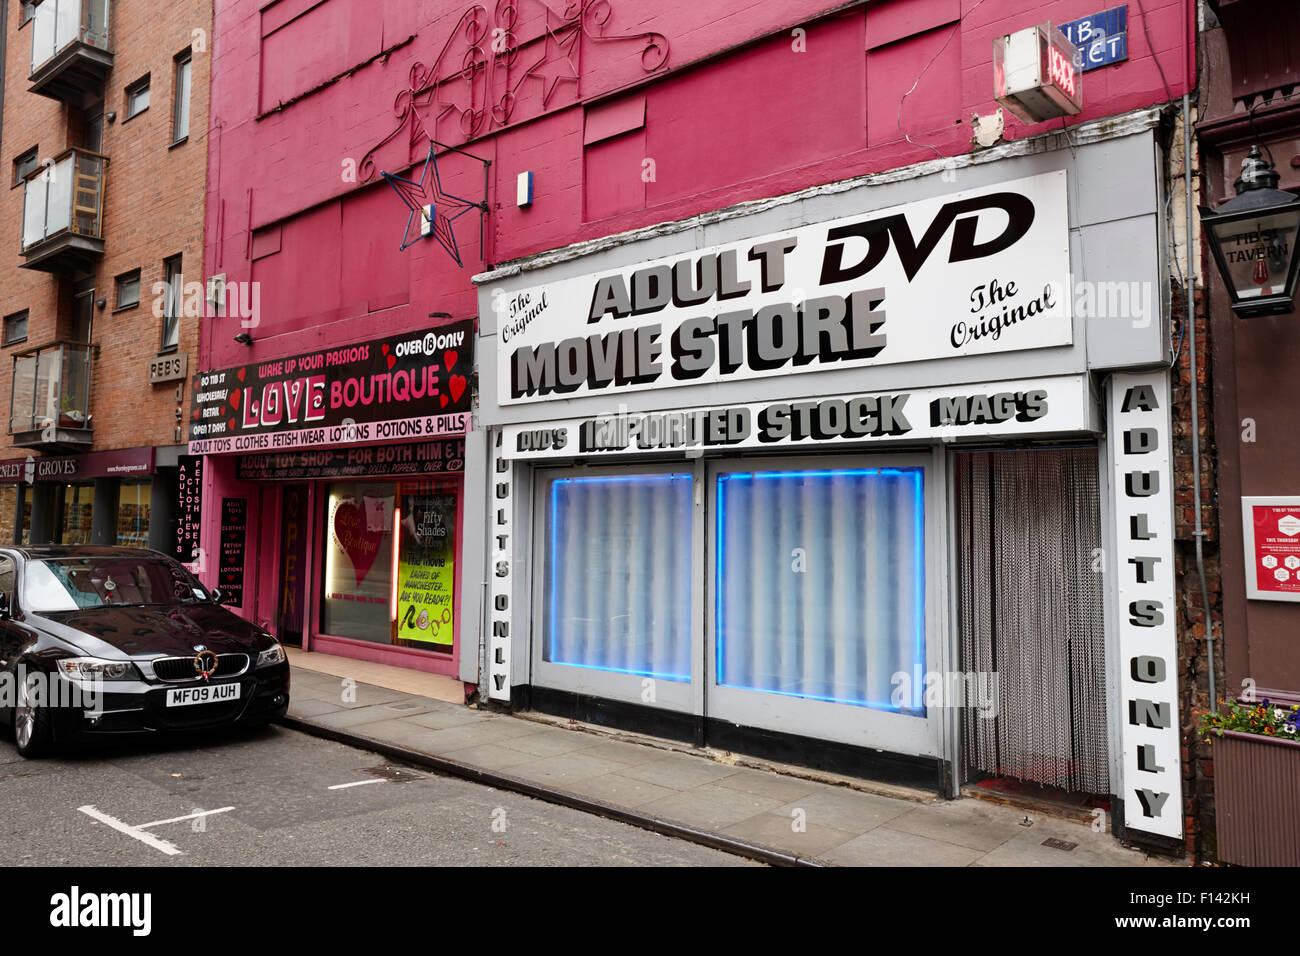 Tienda de DVD para adultos y sex-shop barrio norte de Manchester, RU  Fotografía de stock - Alamy